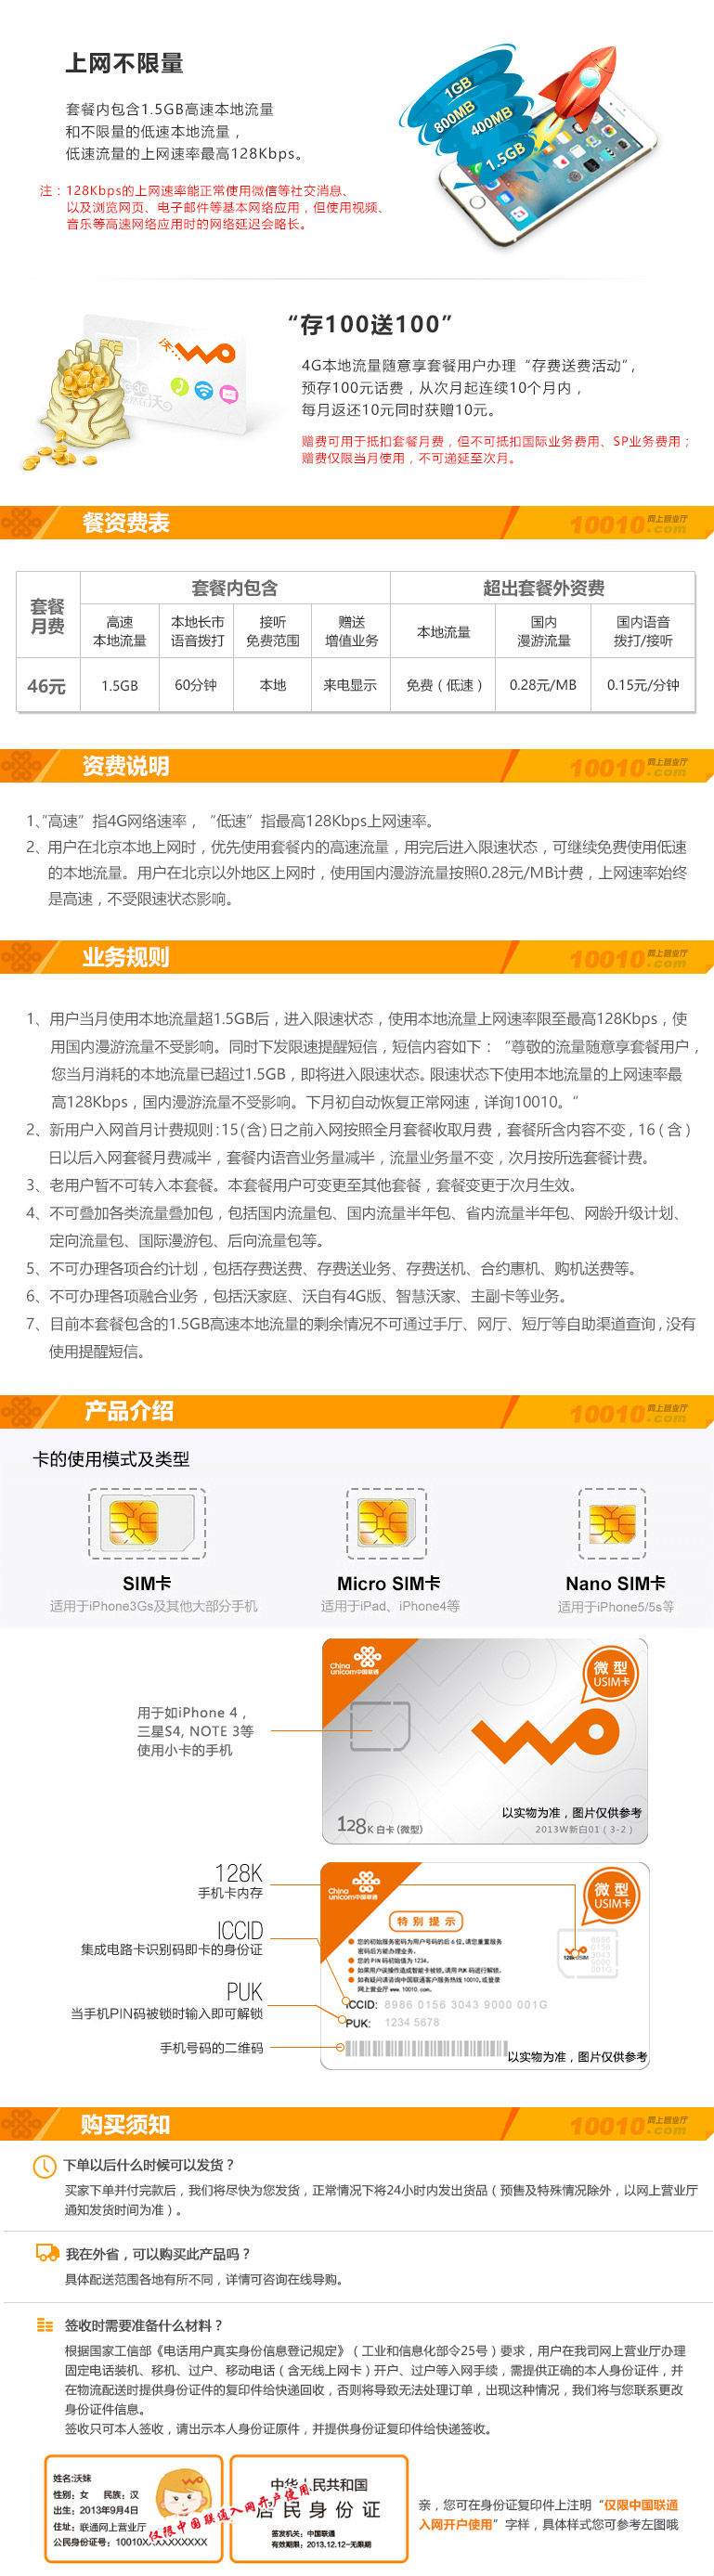 北京联通推出46元无限4G本地流量套餐——限速16KB/s